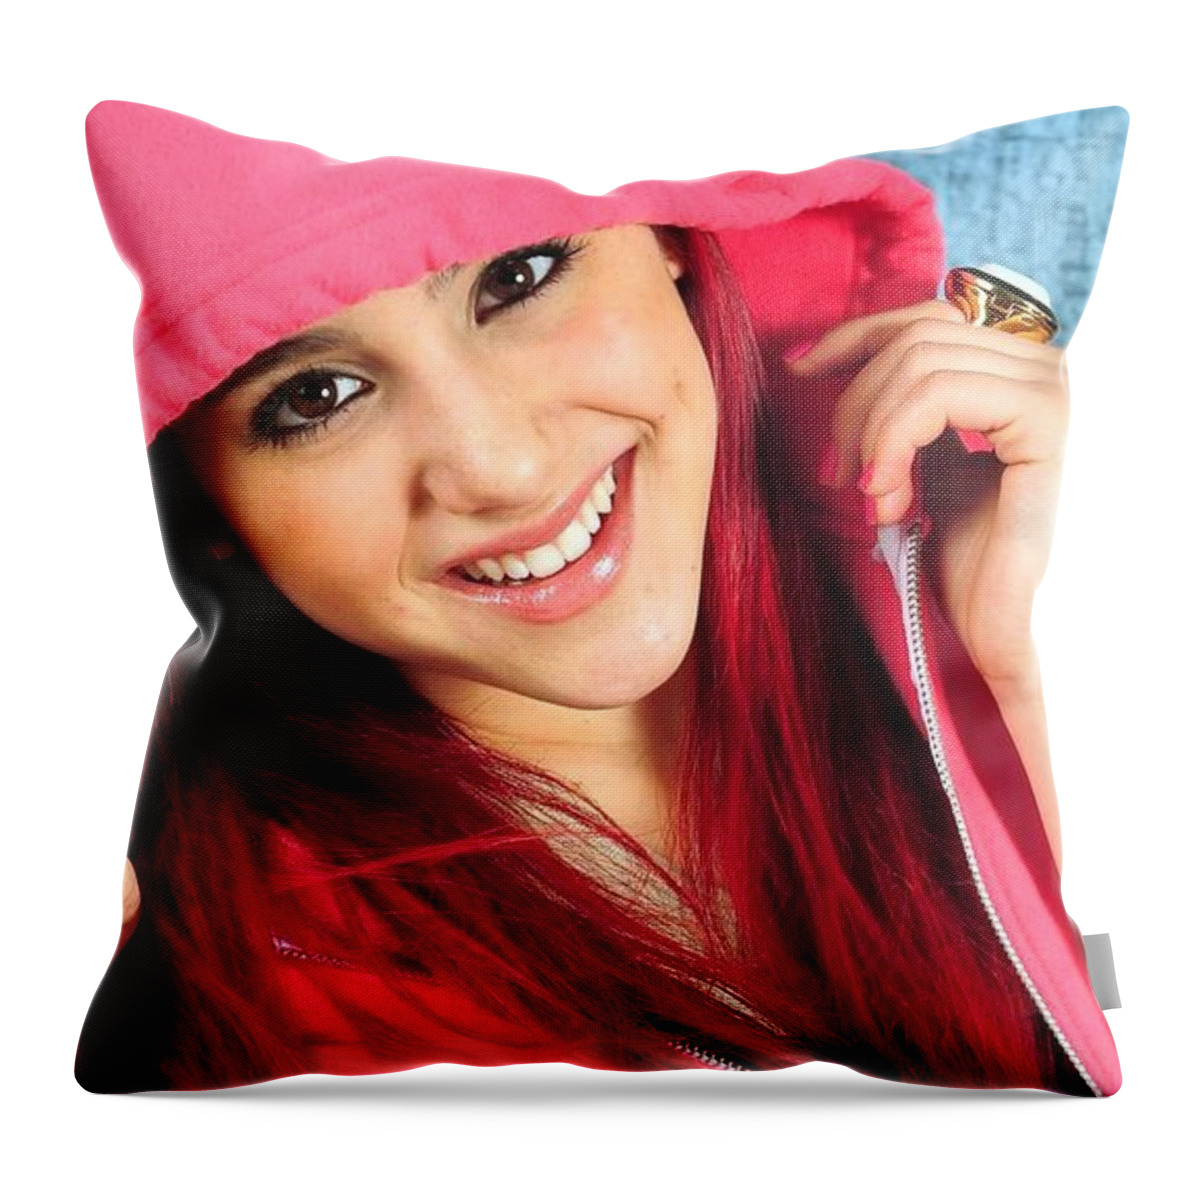 Hip Teen Girl Model Pink Hair Grin UHD Throw Pillow by Art Twister